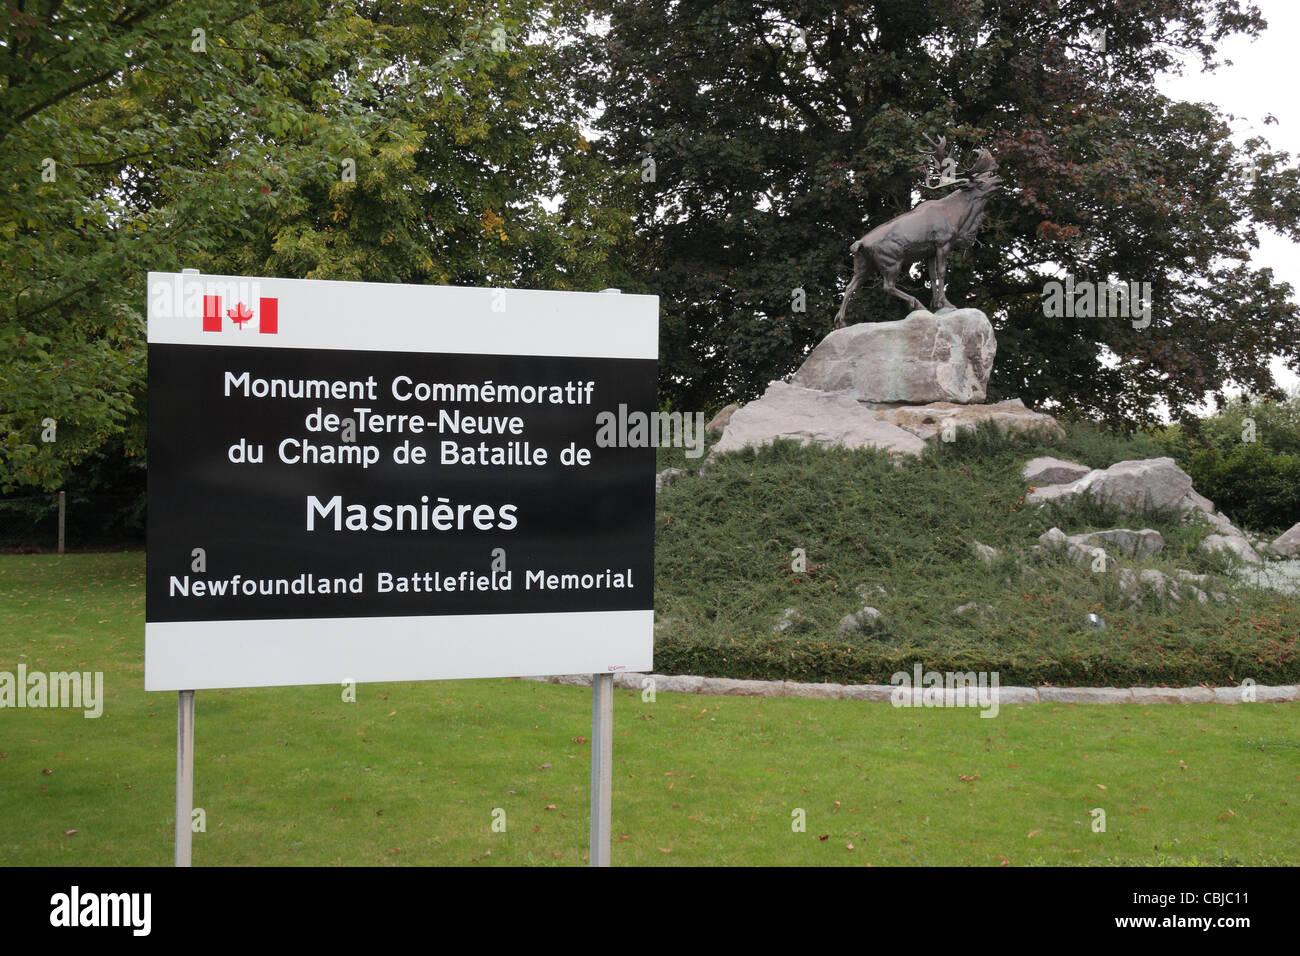 Melden Sie sich bei Masnières kanadischen Neufundland Schlachtfeld Denkmal mit einer Statue von Caribou hinter, in Masnières, Marcoing. Nord, Frankreich. Stockfoto